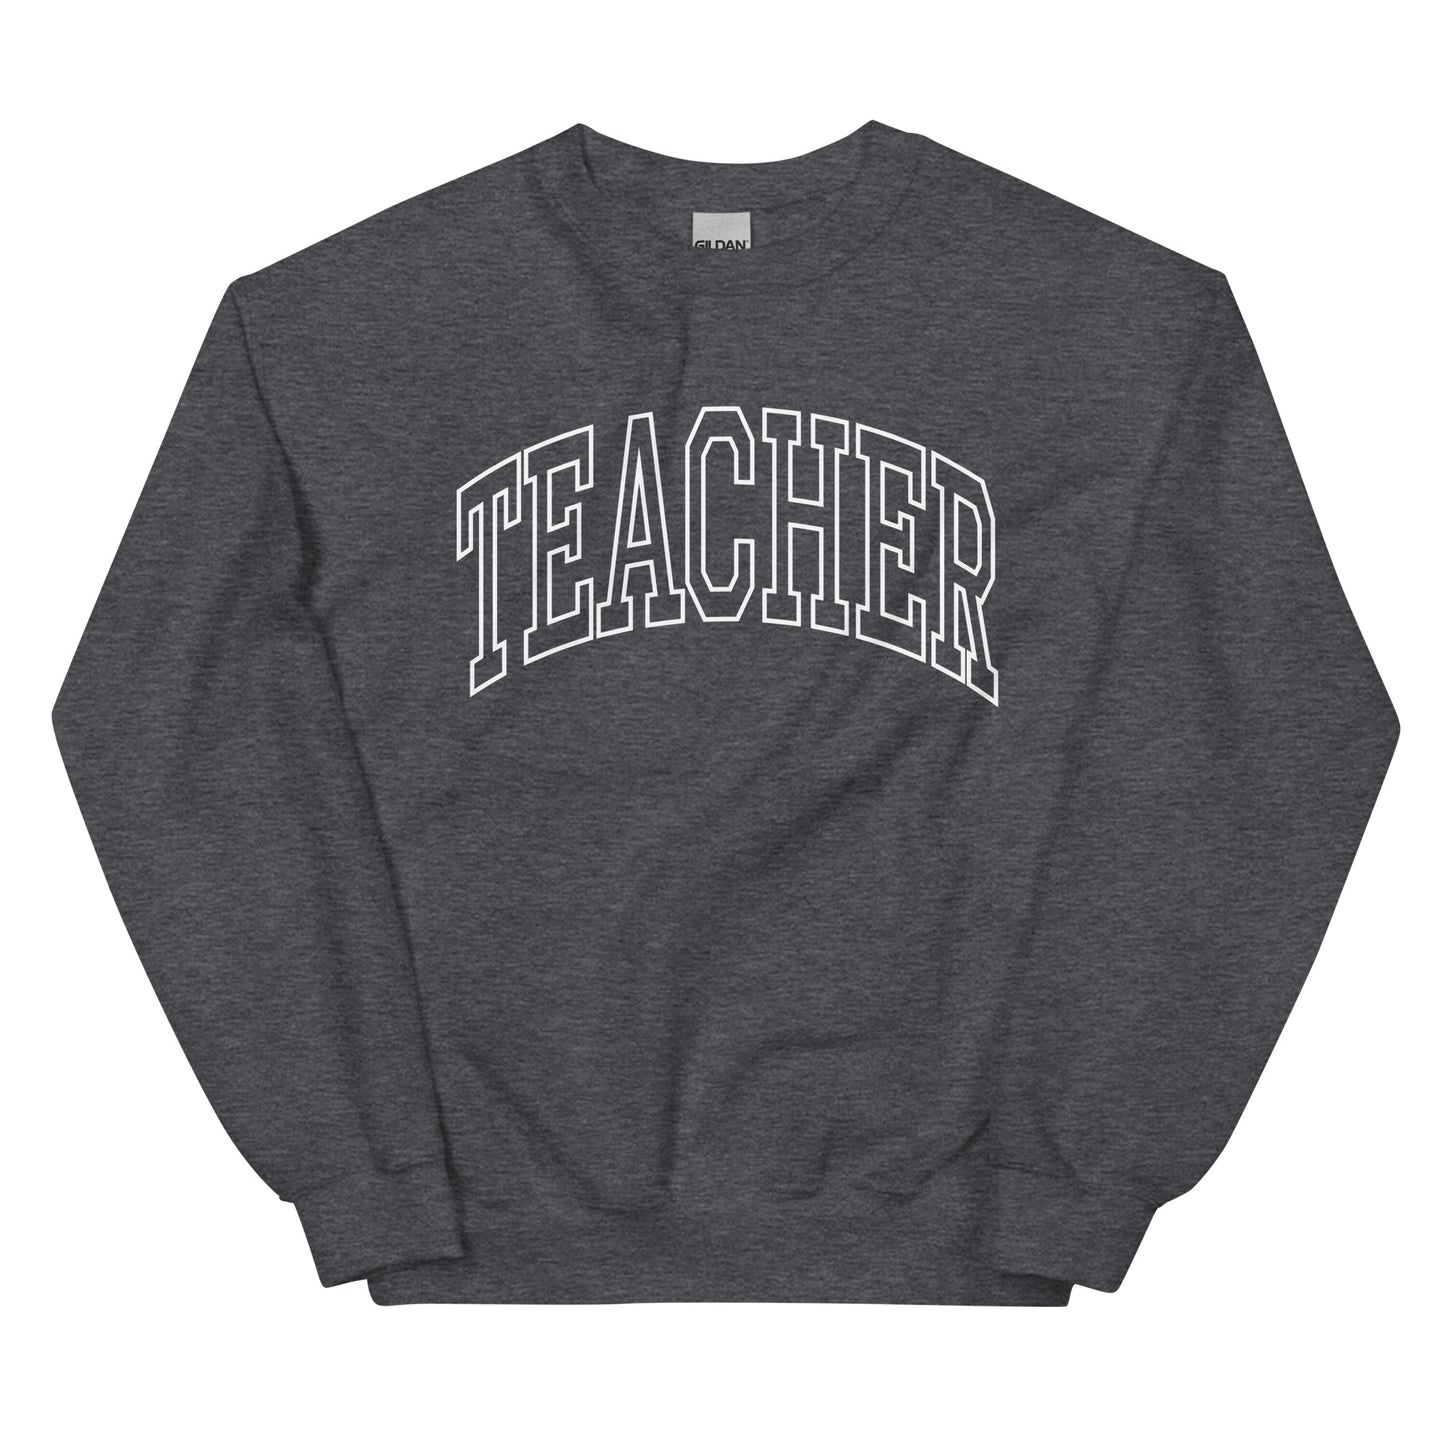 Teacher Sweatshirt 02